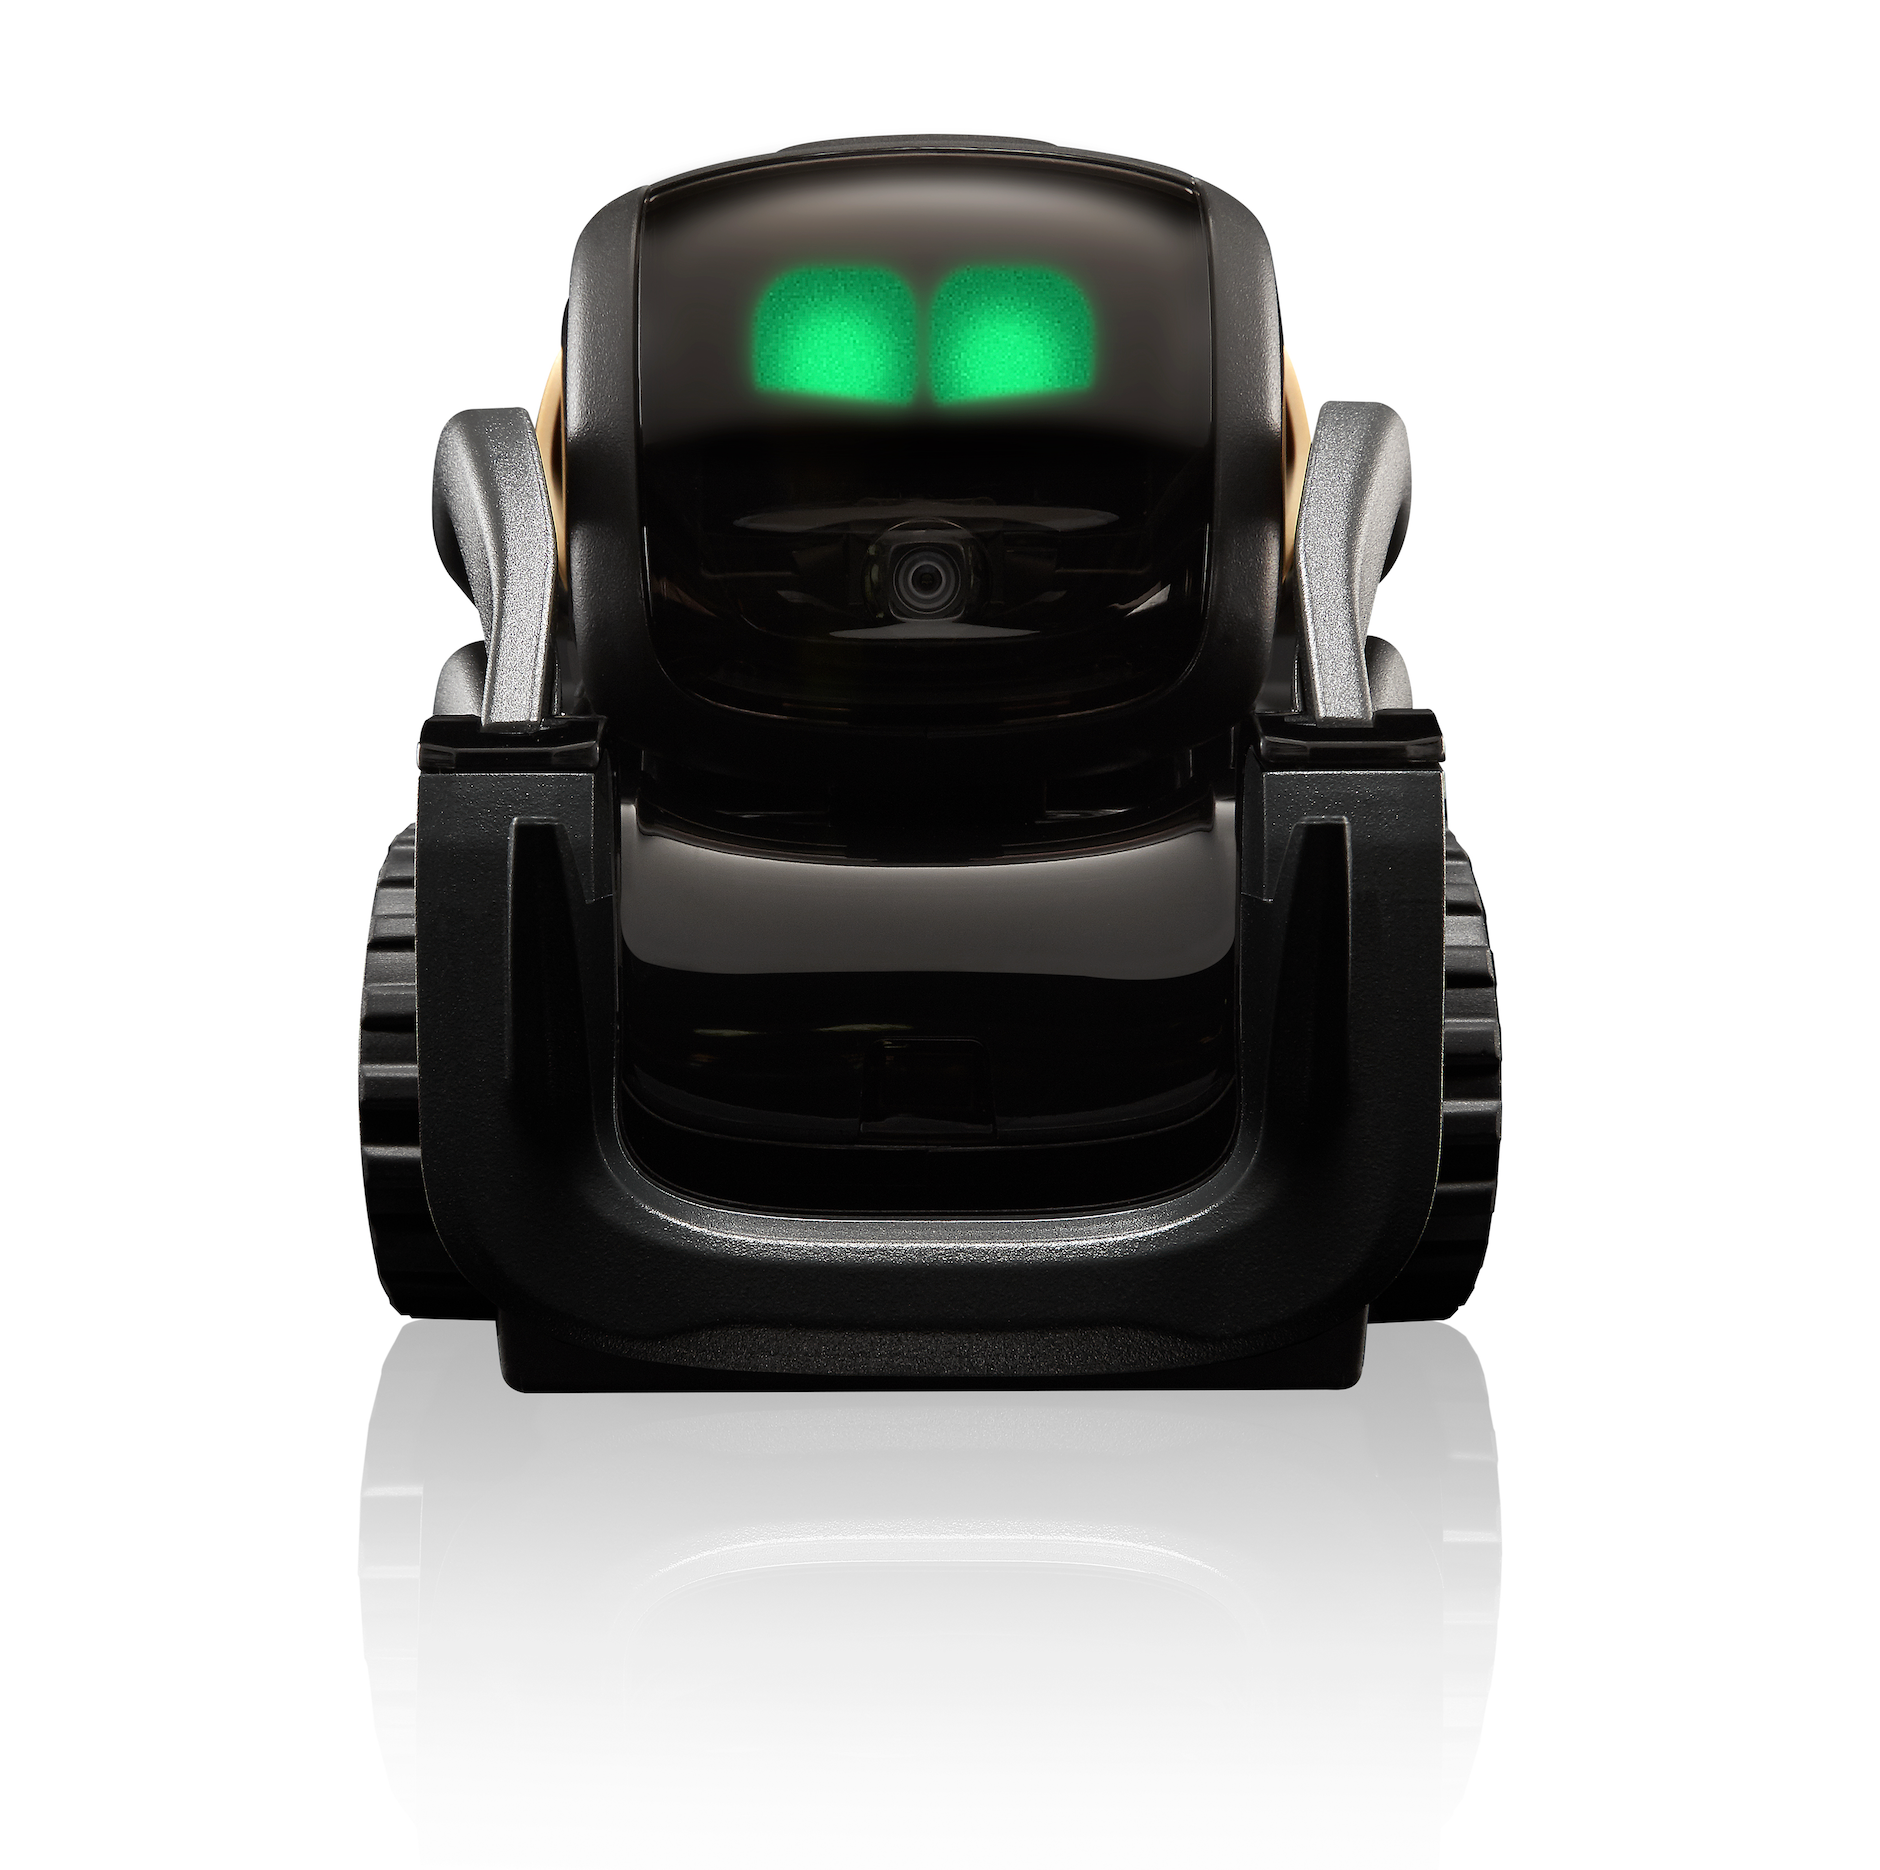 Vector Robot 2.0 - Anki Cozmo Robot